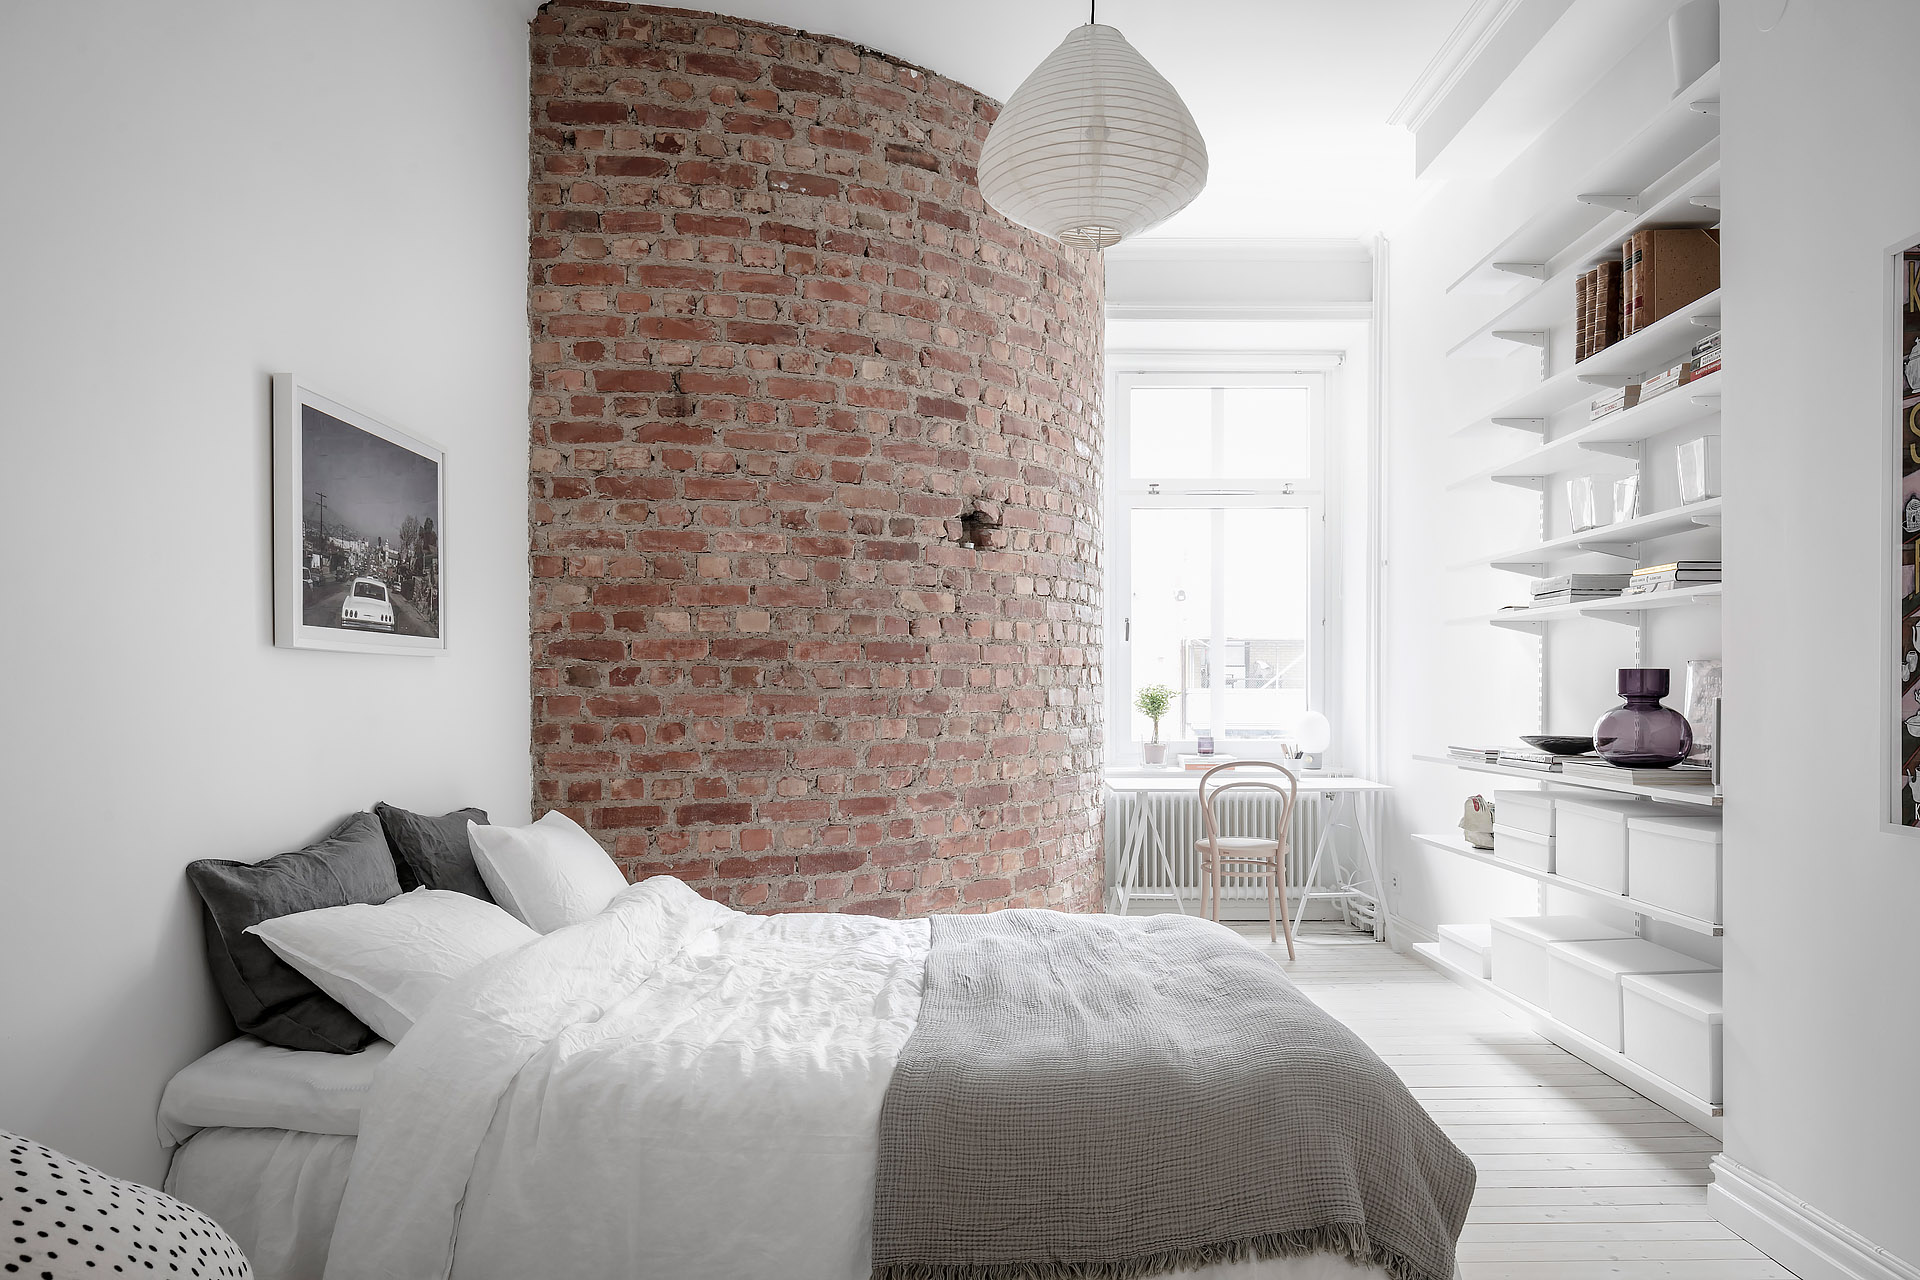 Deze witte slaapkamer is voorzien van een super charmante ronde bakstenen muur